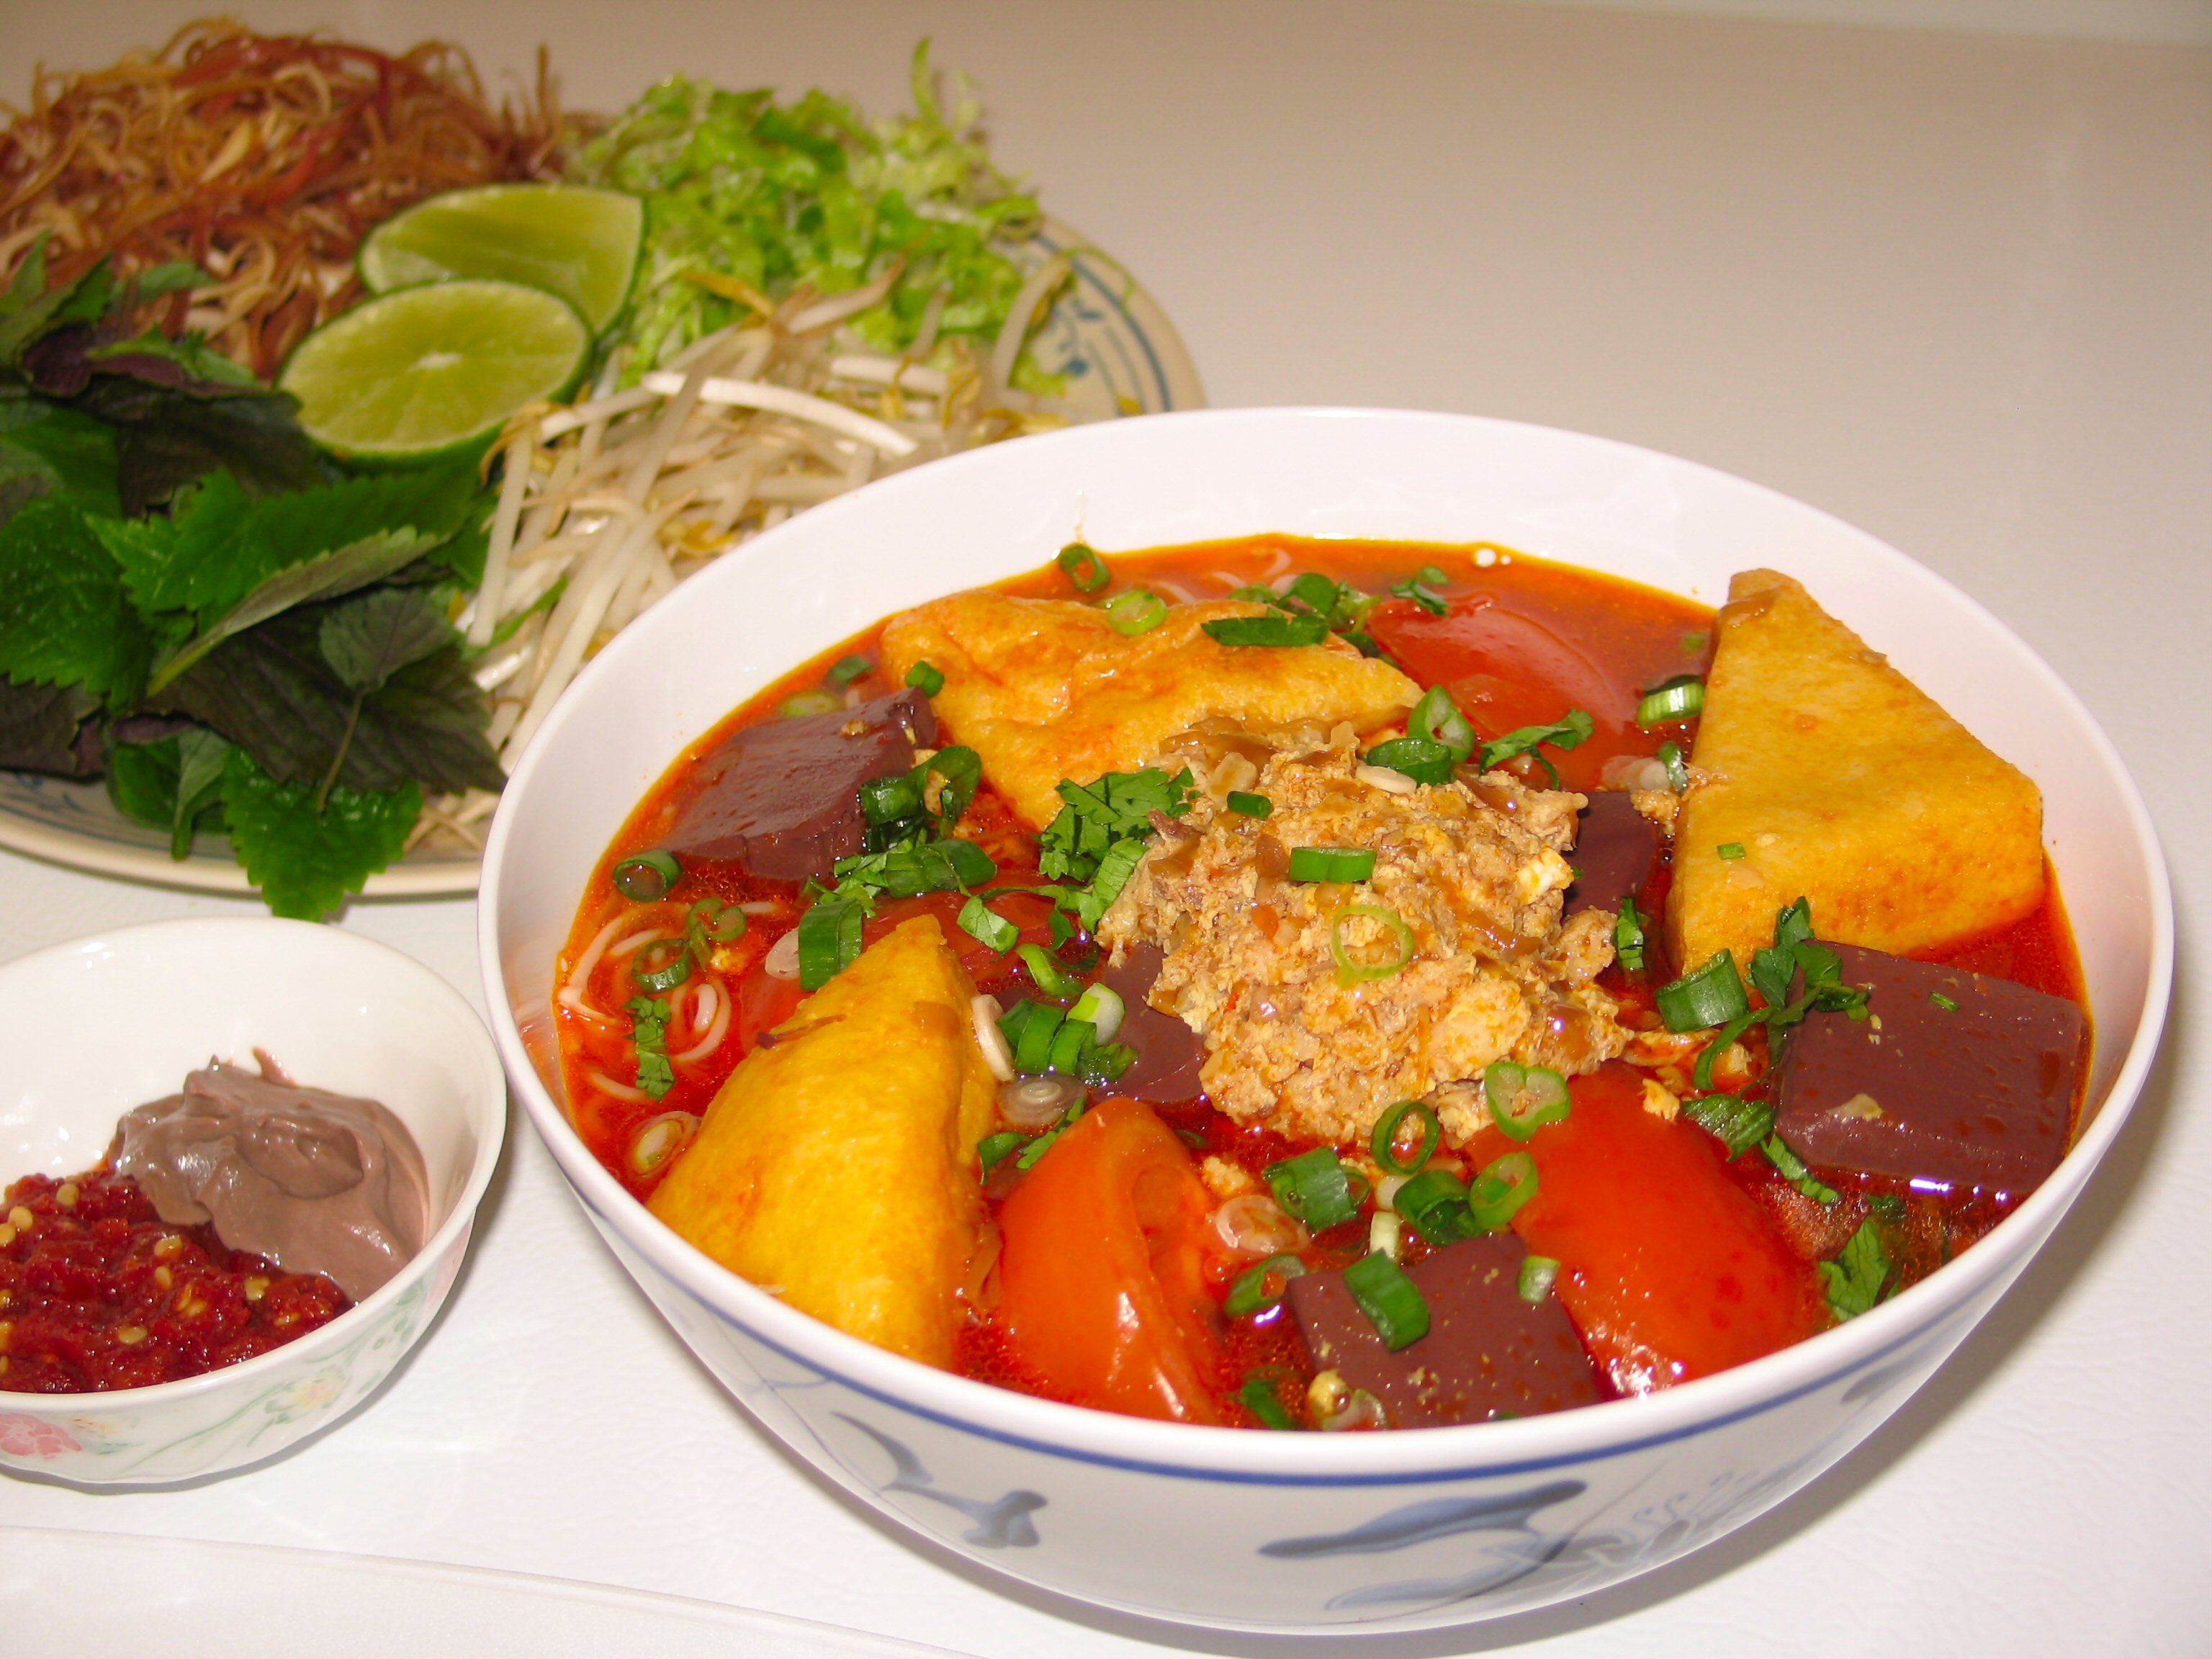 外国人が知らないベトナムの郷土料理の魅力について